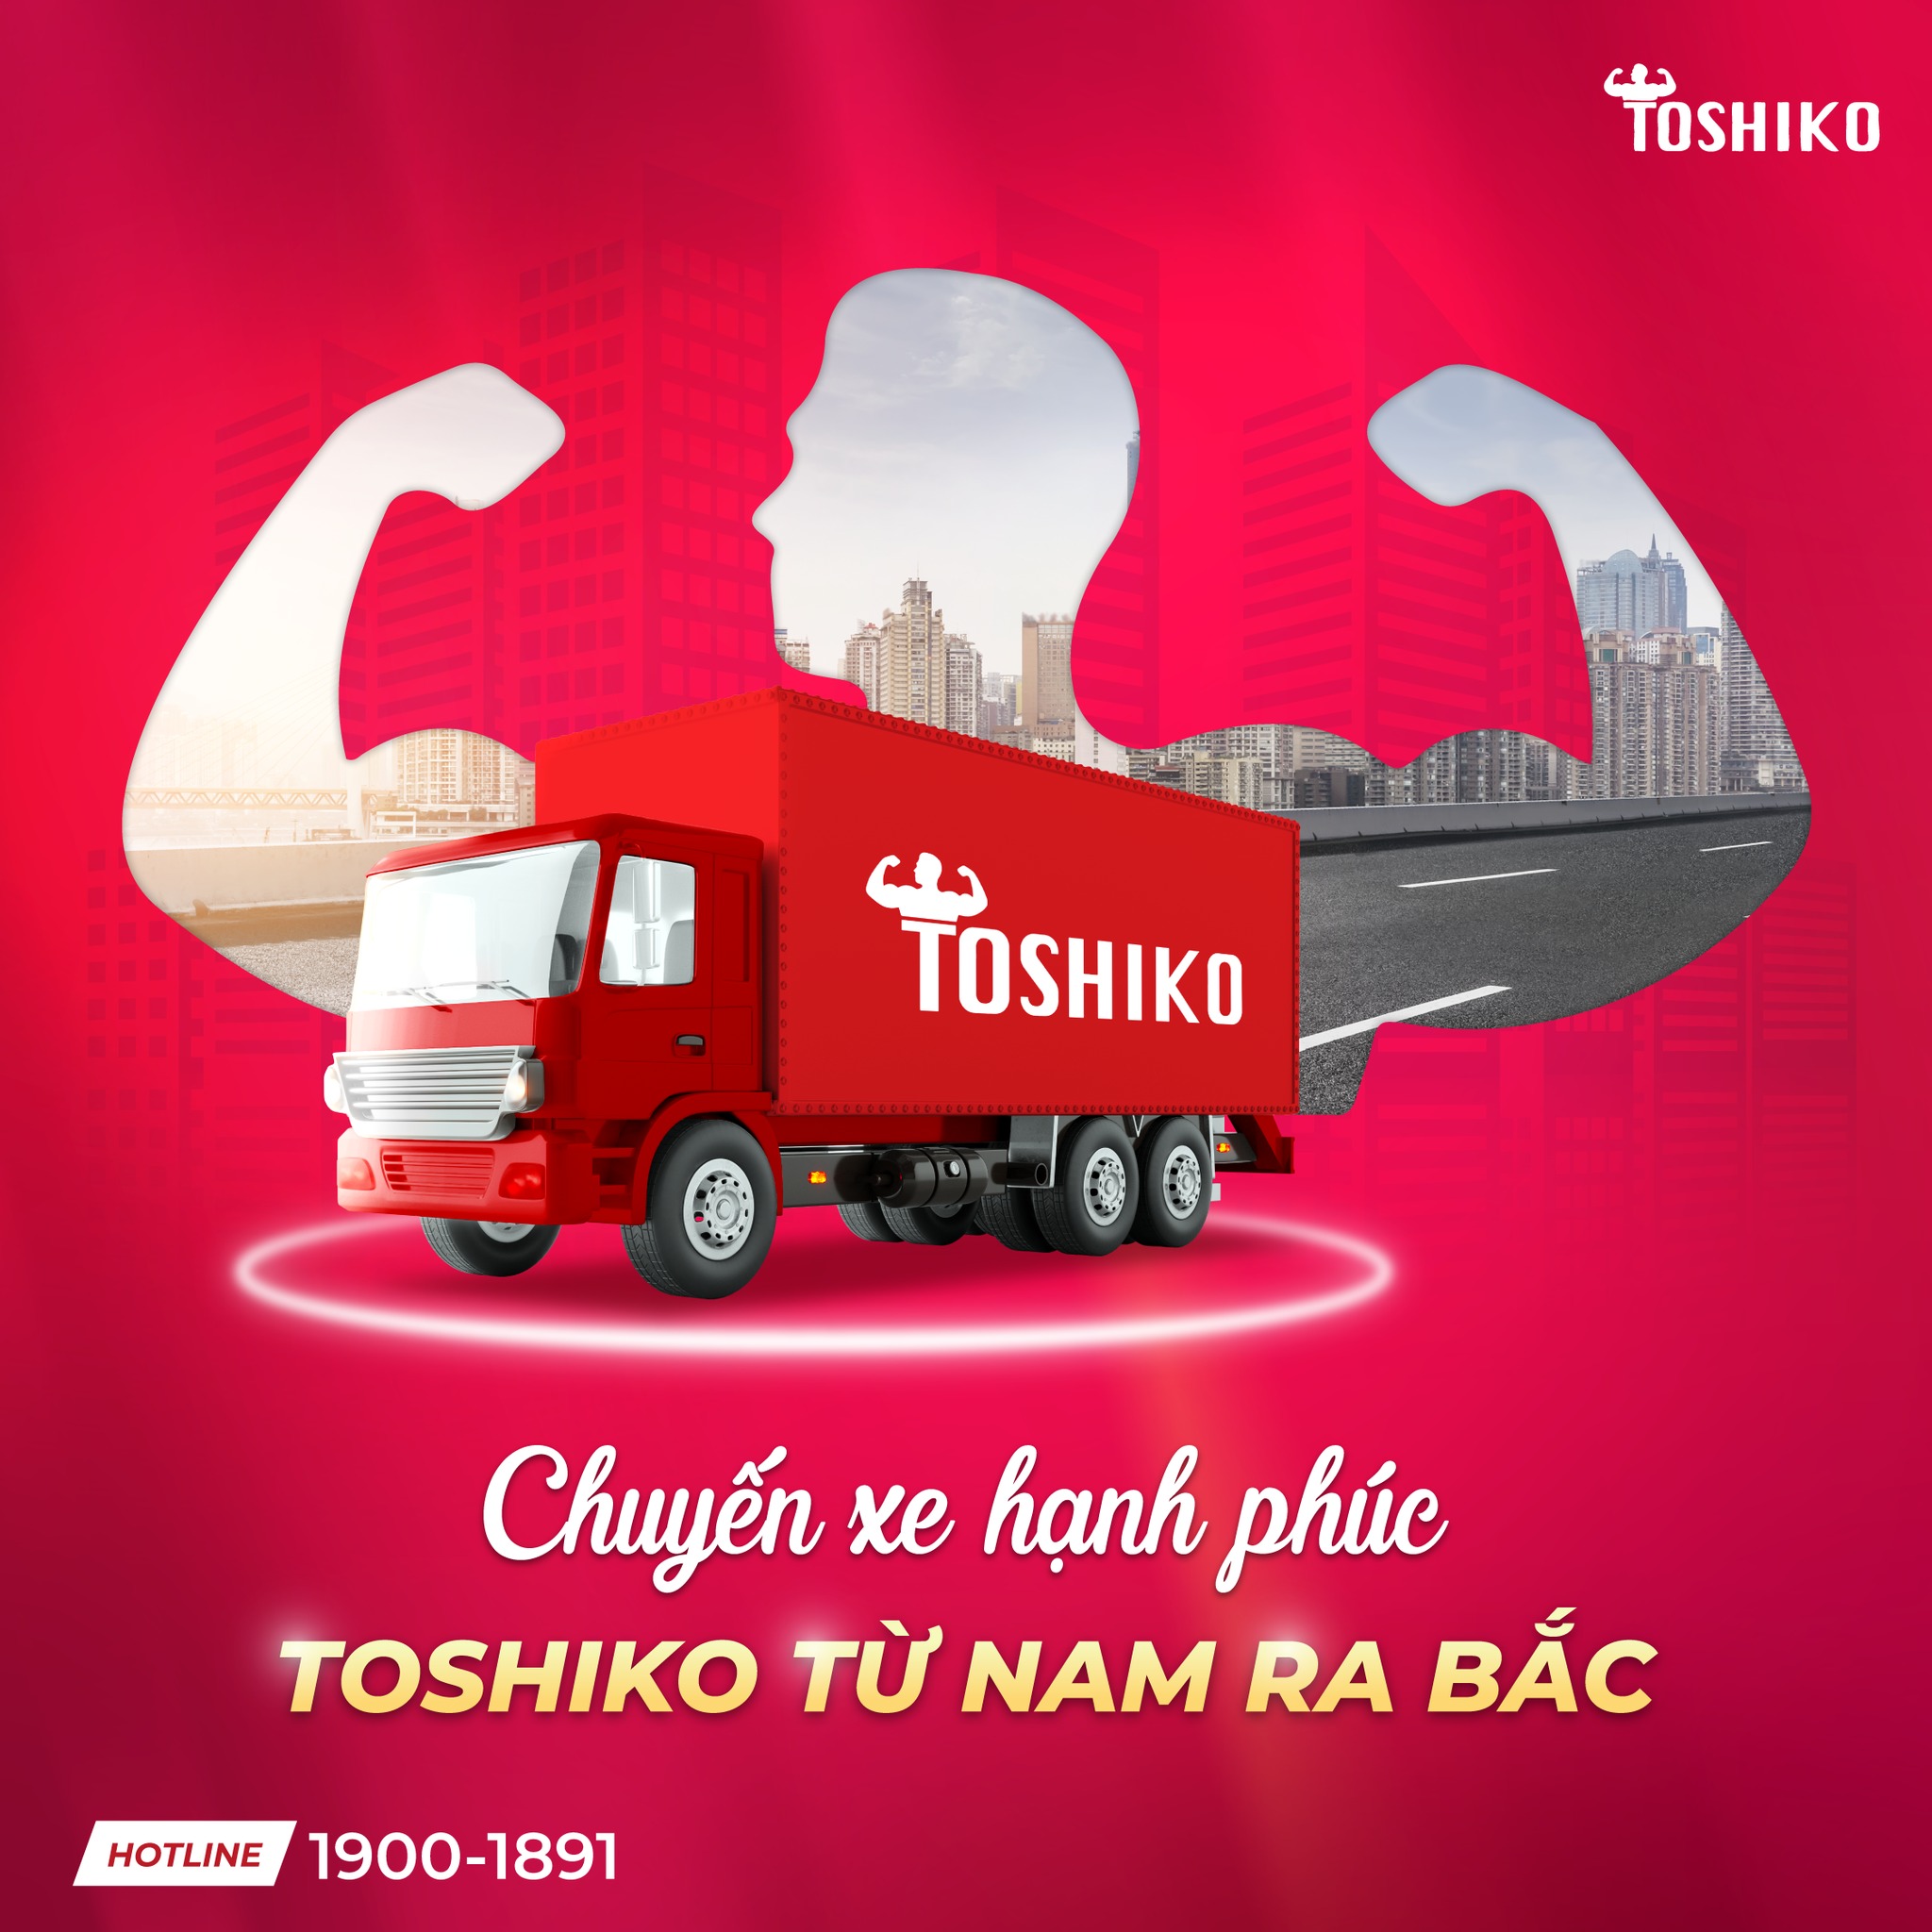 Toshiko Việt Nam giao hàng miễn phí trên toàn quốc